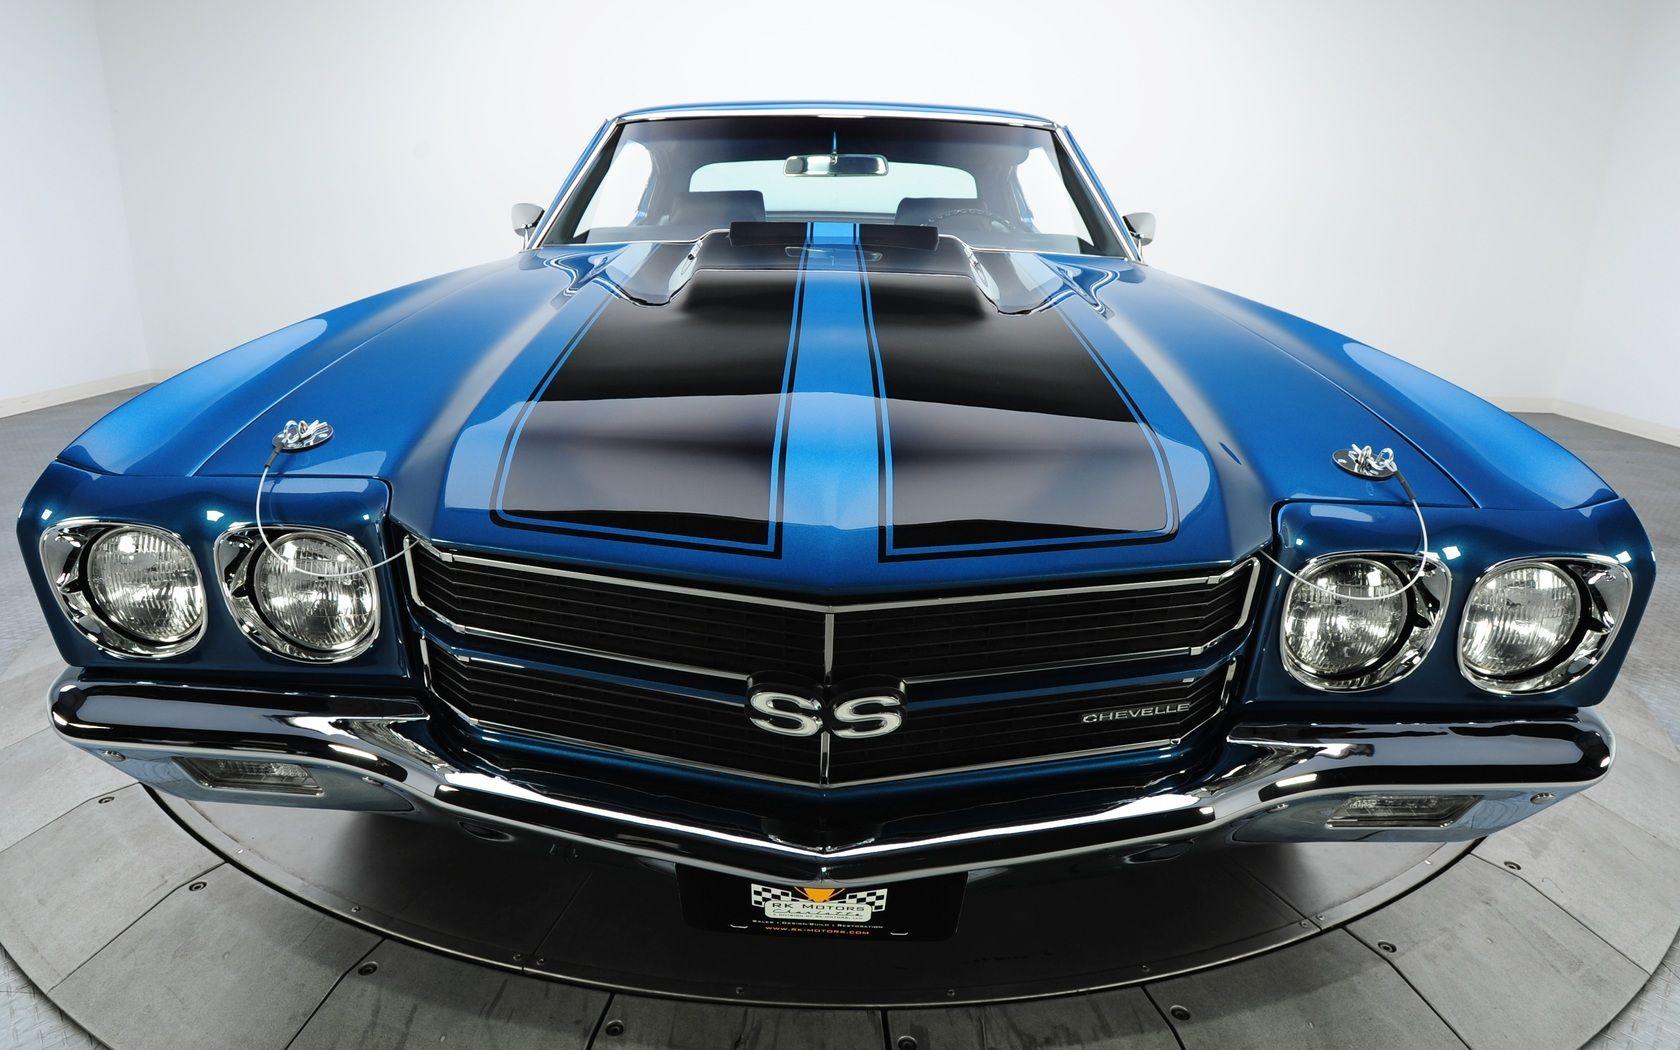 Chevrolet Shevil Muscle Cars HD Best Wallpaper 1680x1050 pixel HD